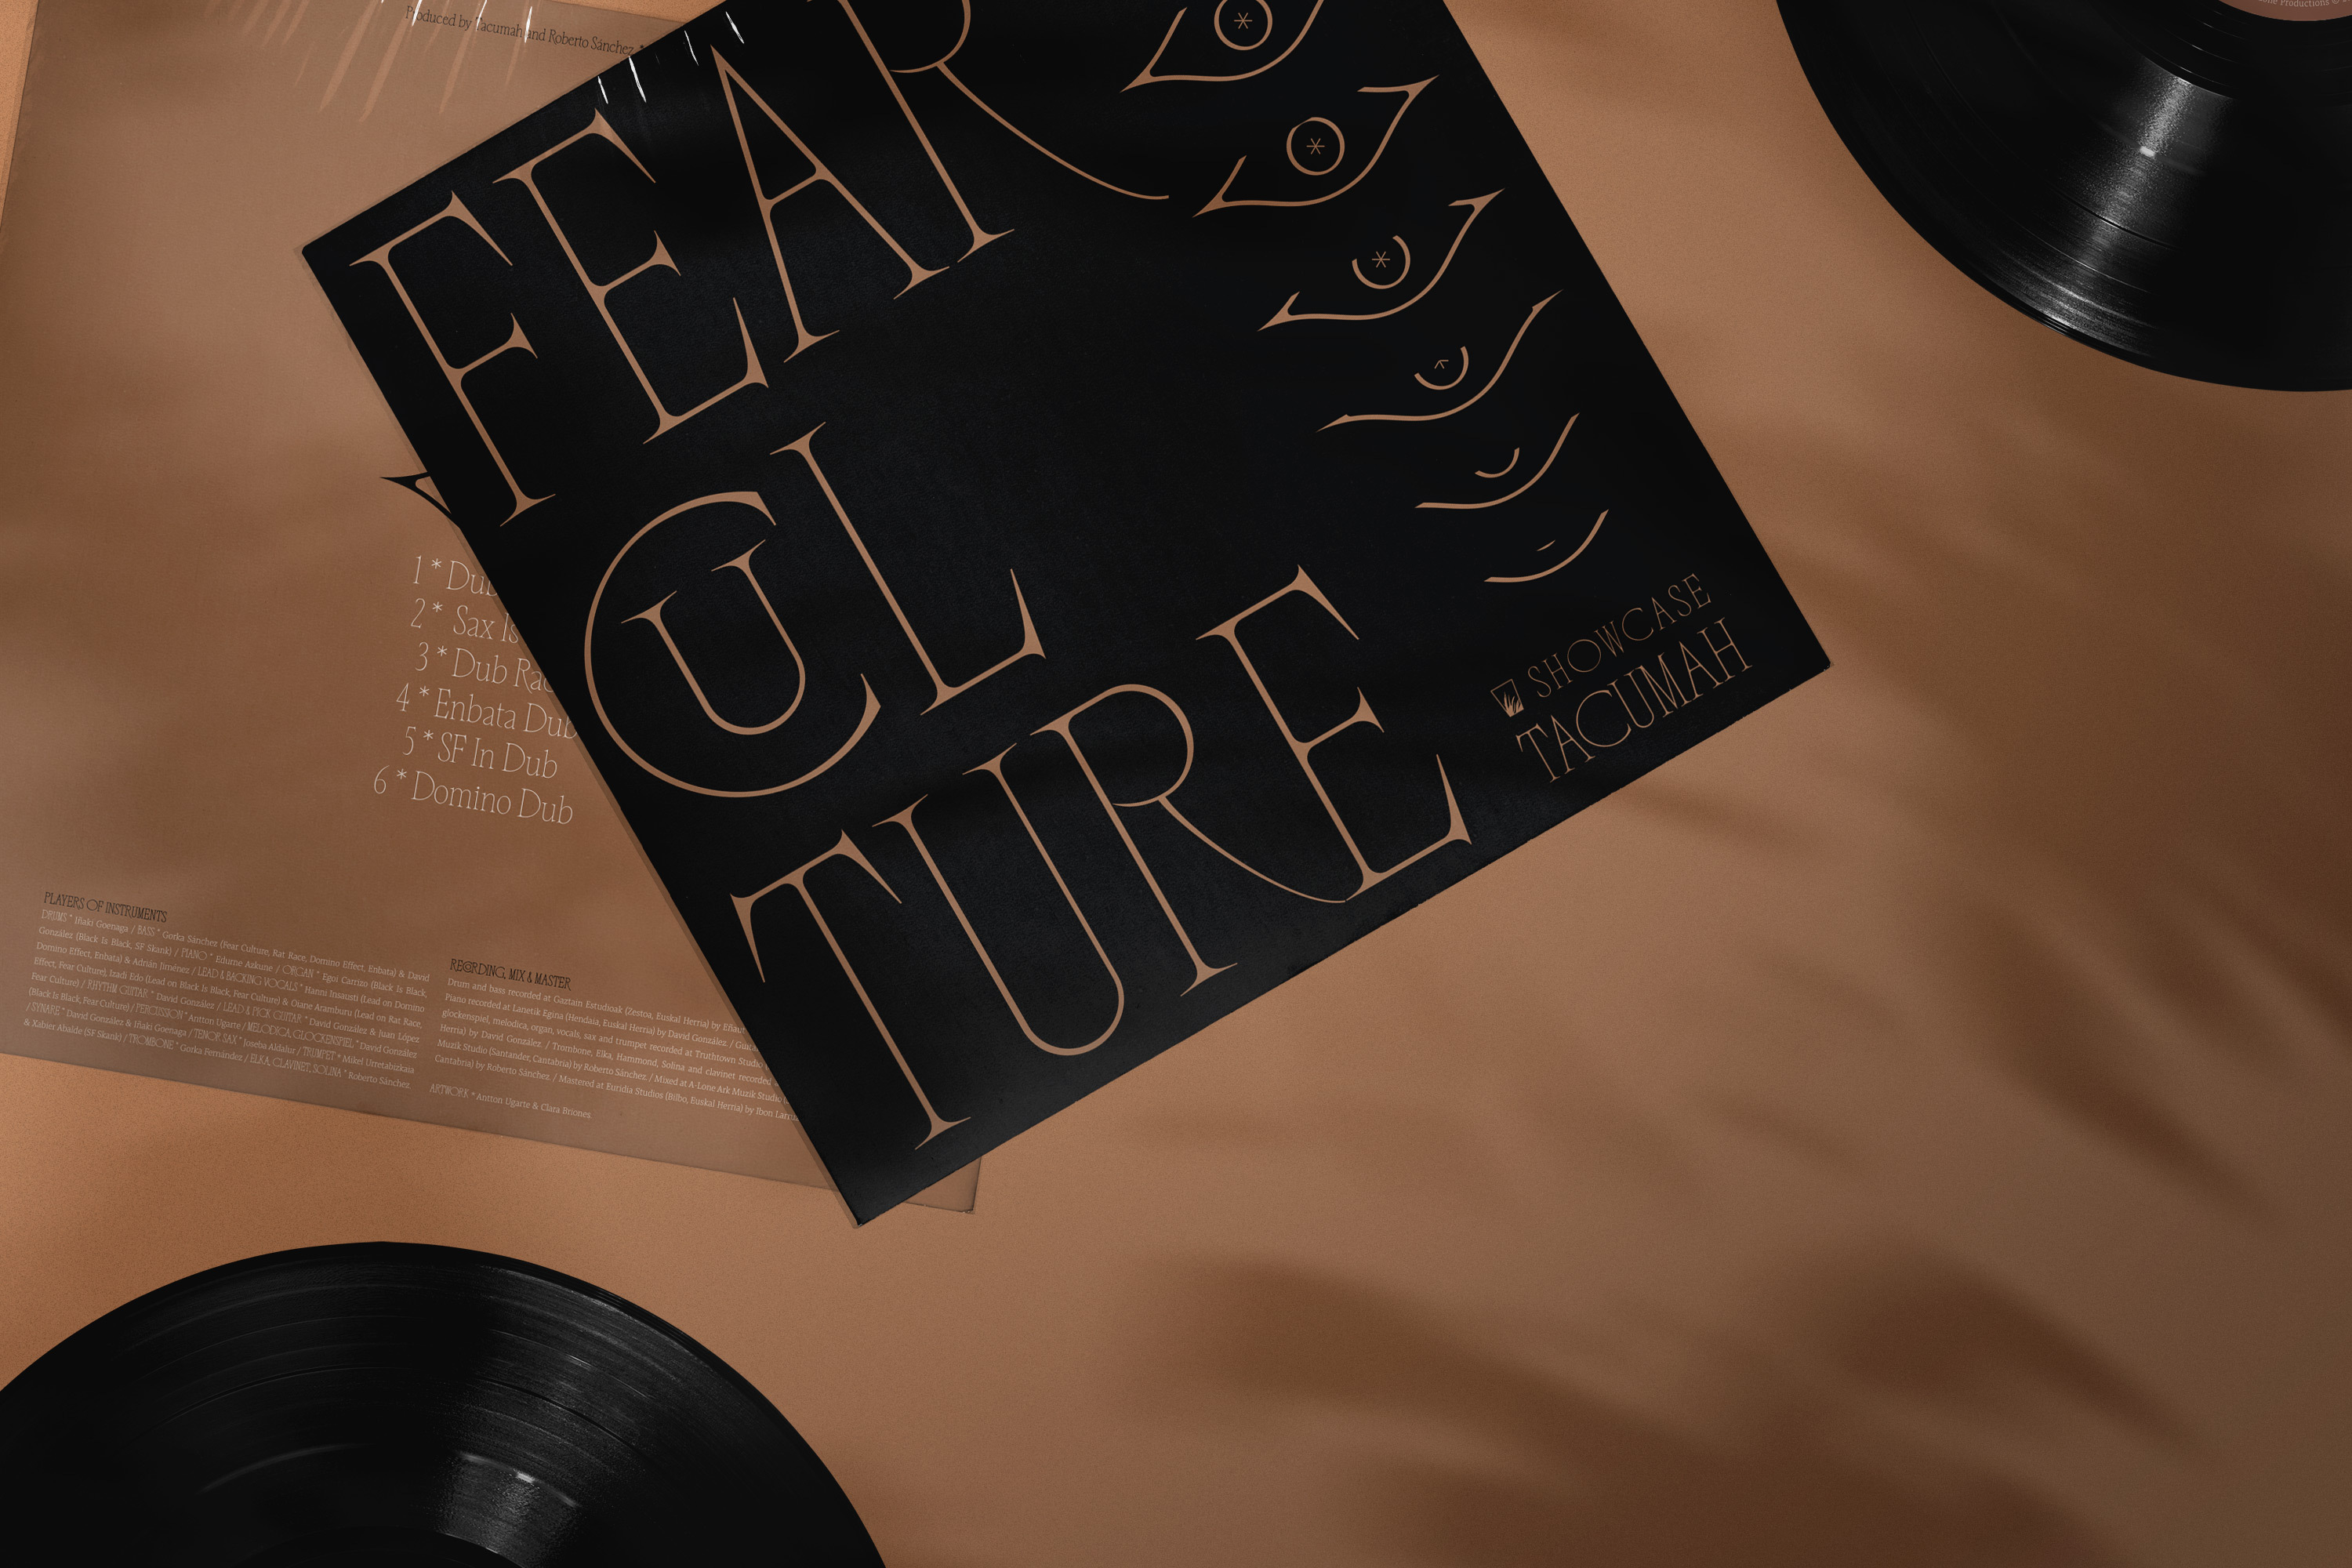 Tacumah LP - Fear Culture by Clara Briones - Antton Ugarte - Creative Work - $i